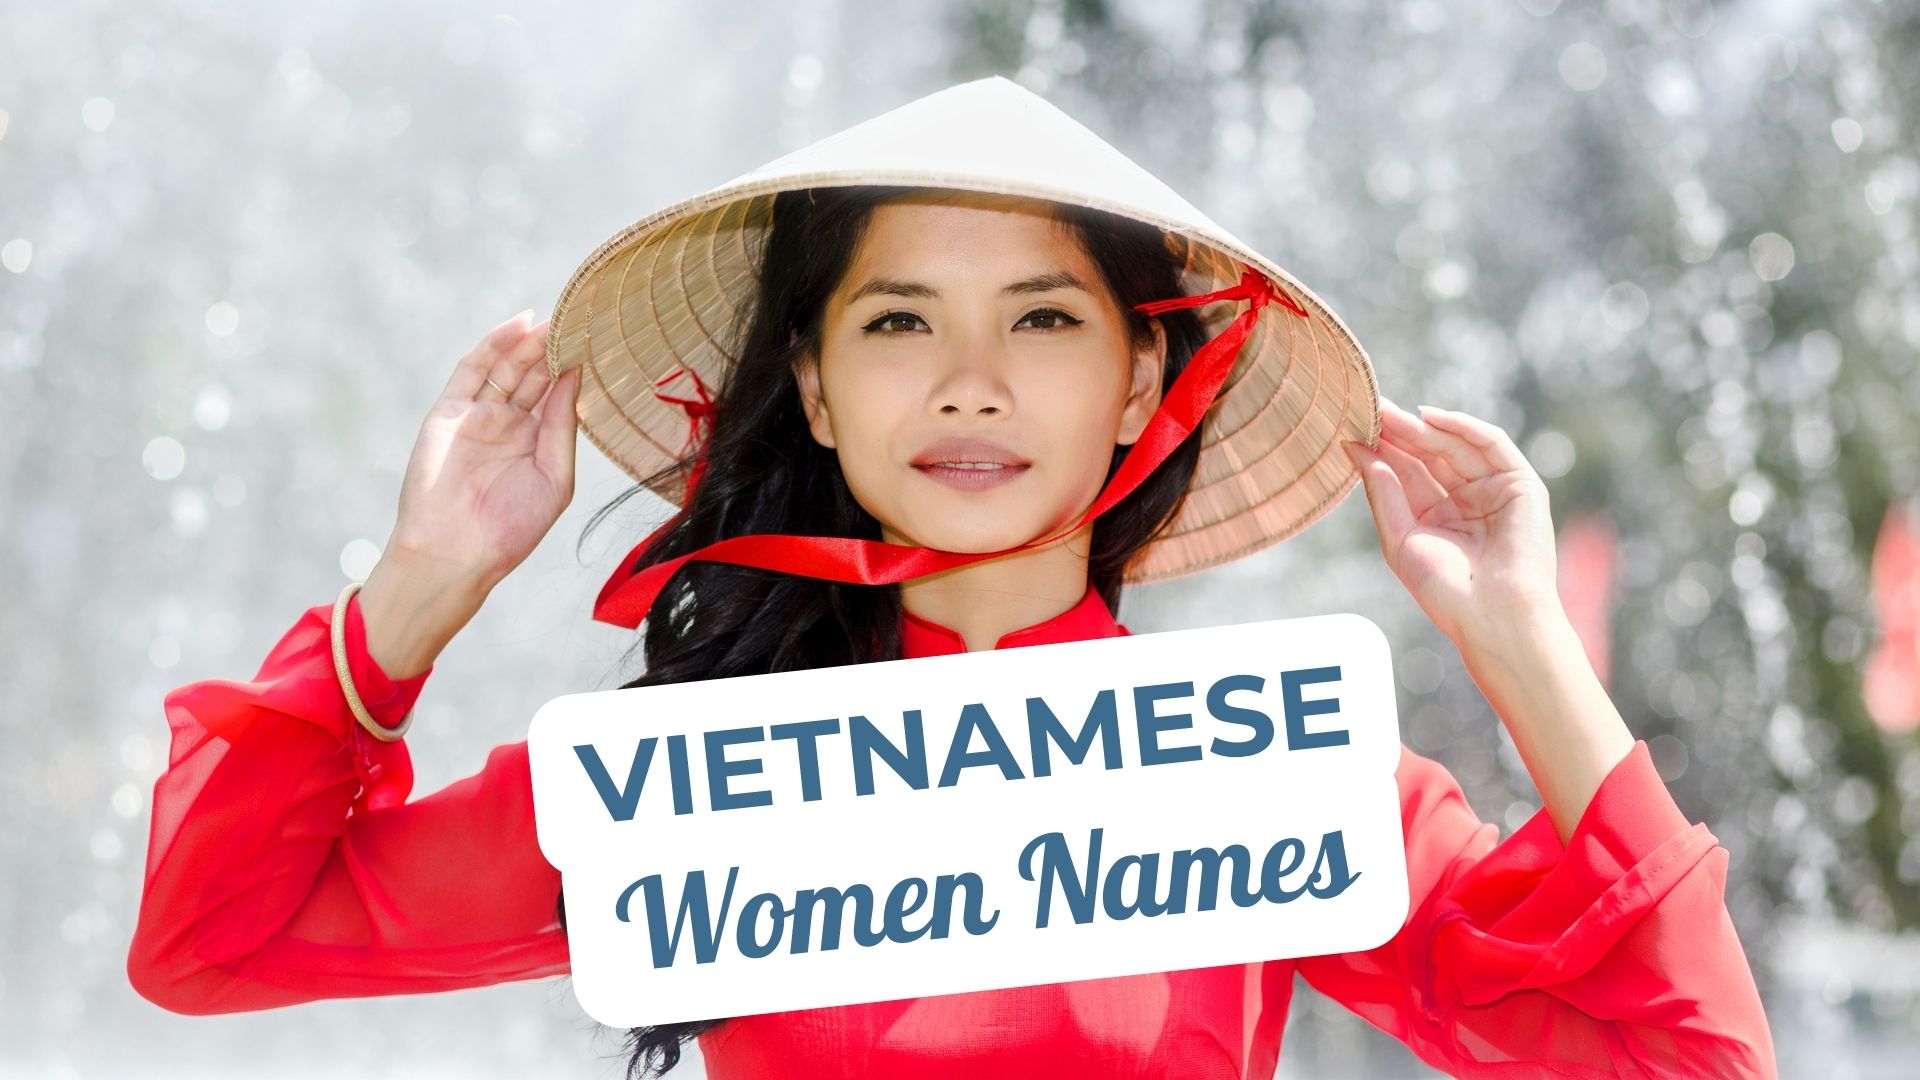 Beautiful Vietnamese Women Names to Consider